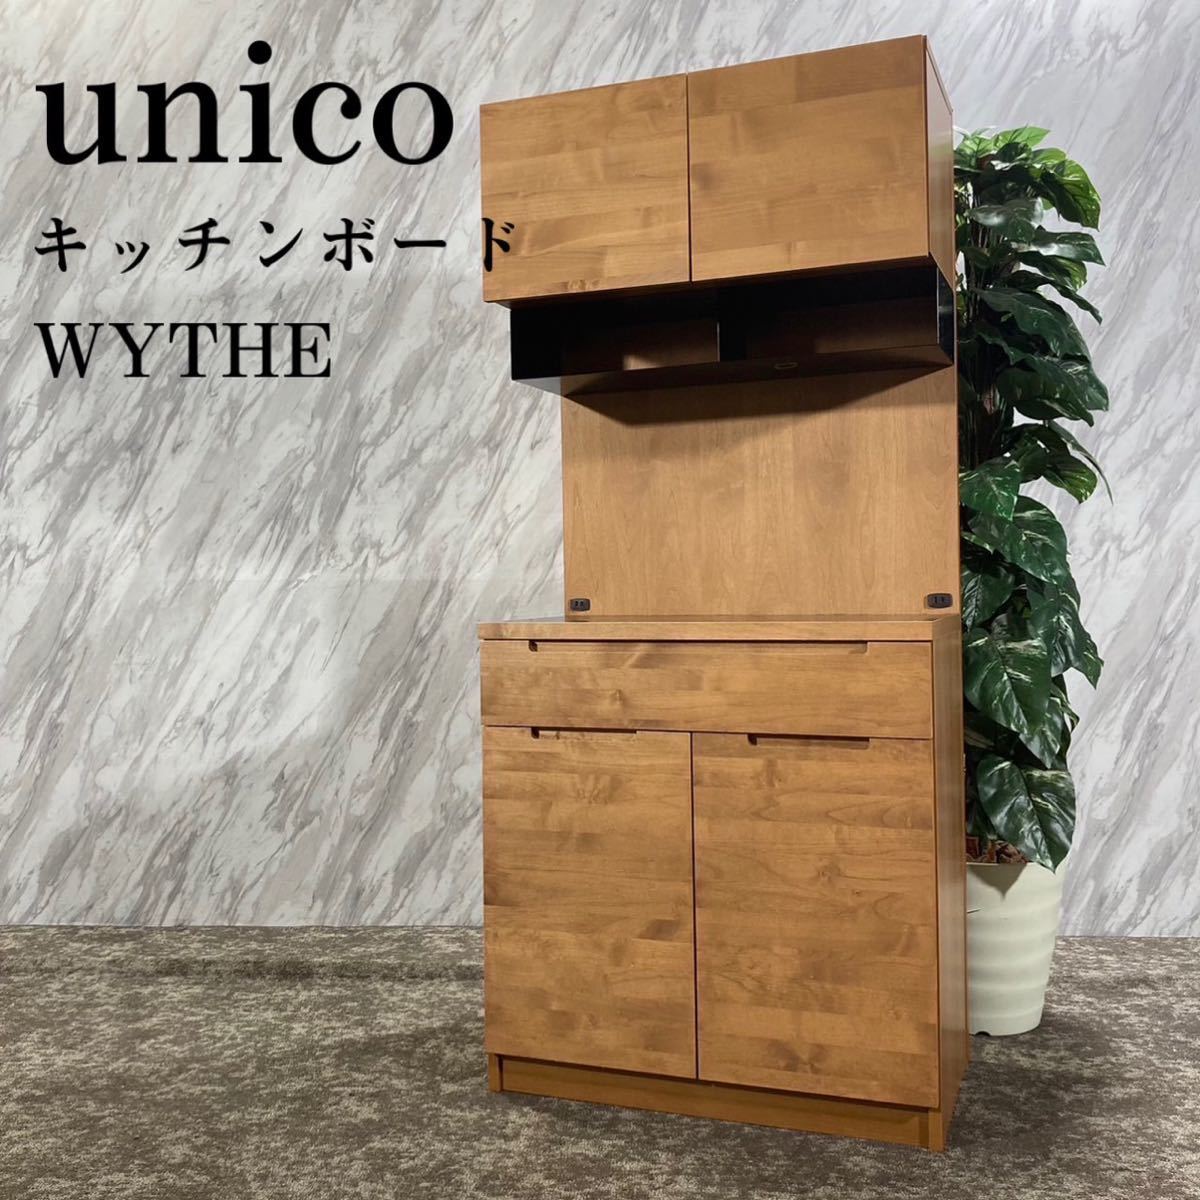 unico ウニコ キッチンボードS WYTHE 食器棚 キッチン収納 G451 - 家具